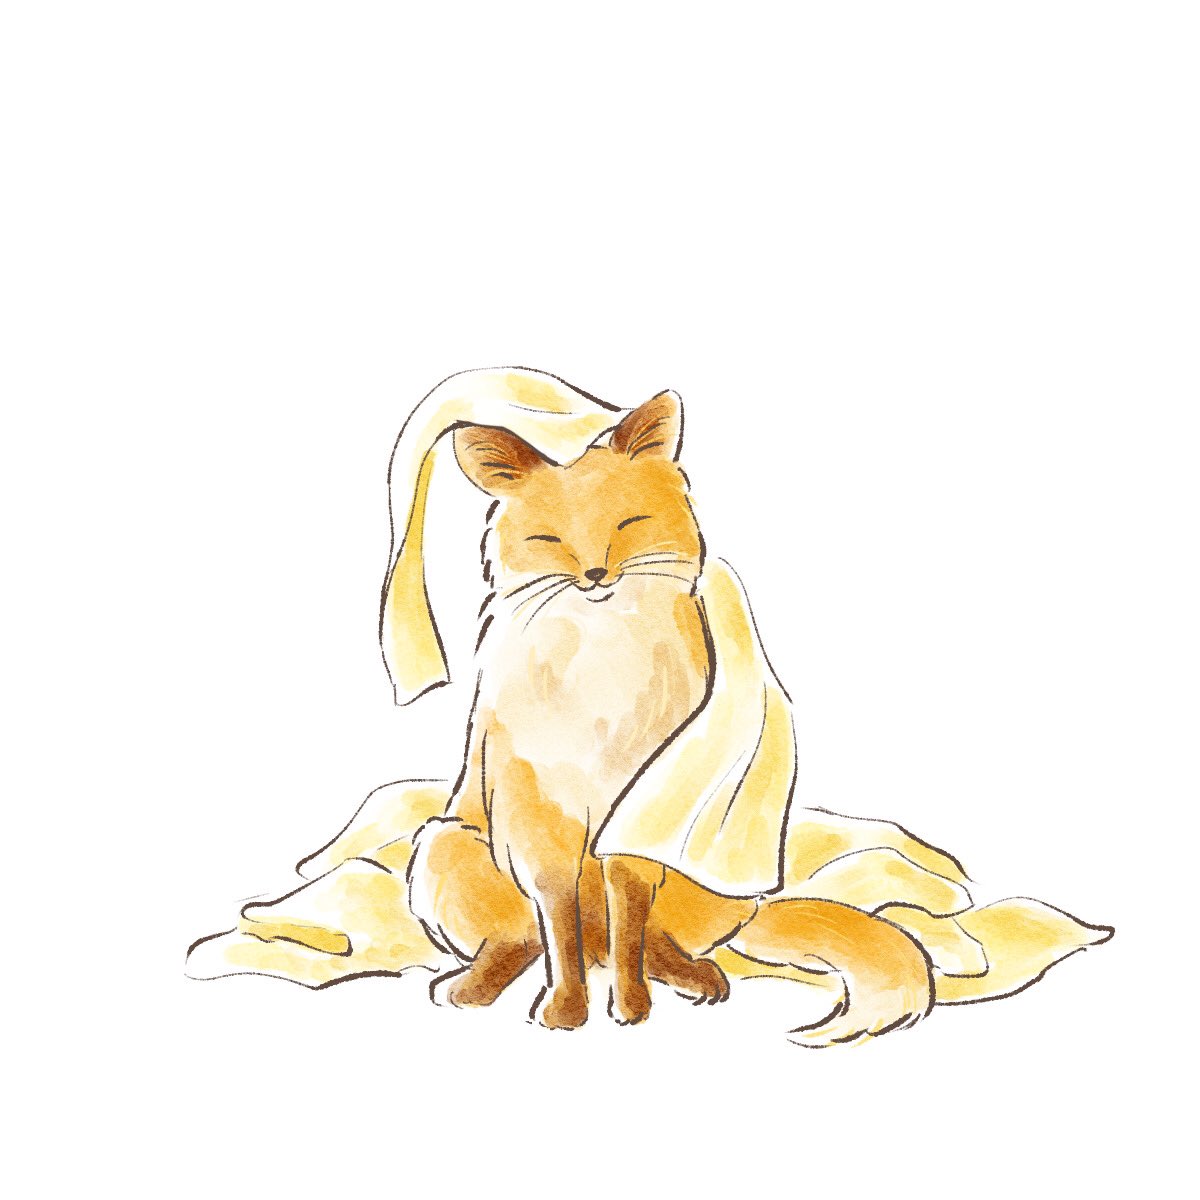 「#天狐の日だしTLを狐で埋める 」|夏朱 優衣 (なつか ゆい) / illustratorのイラスト